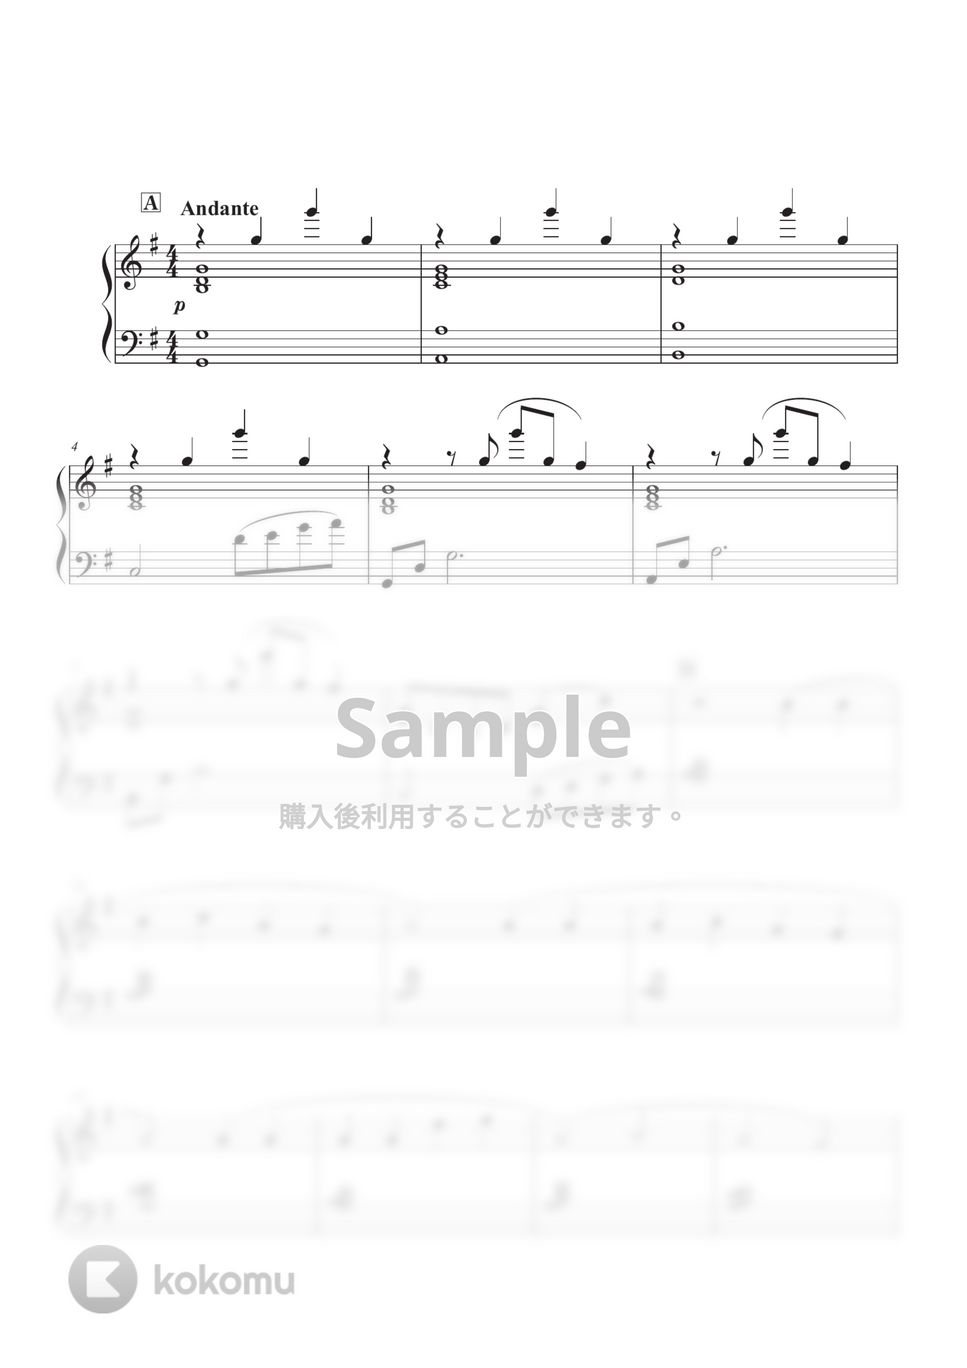 スピッツ - 渚 (ピアノアレンジ) by コギト